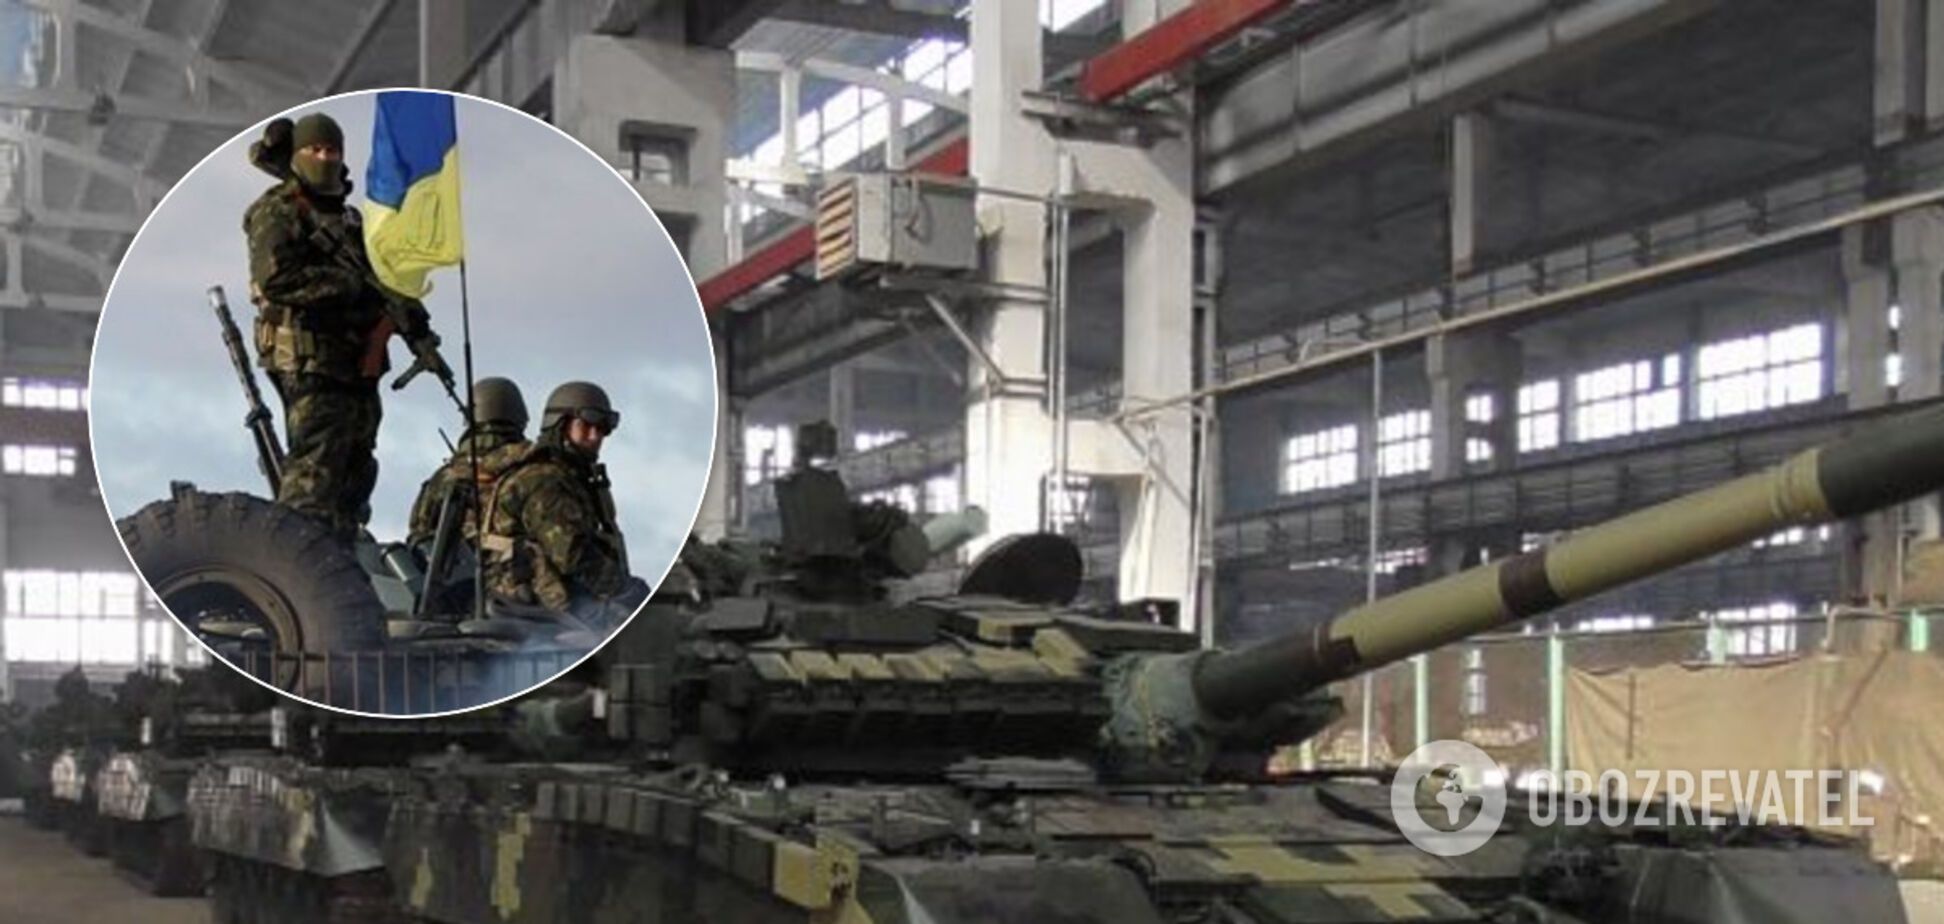 ВСУ усилили защиту на передовой новыми танками. Фото